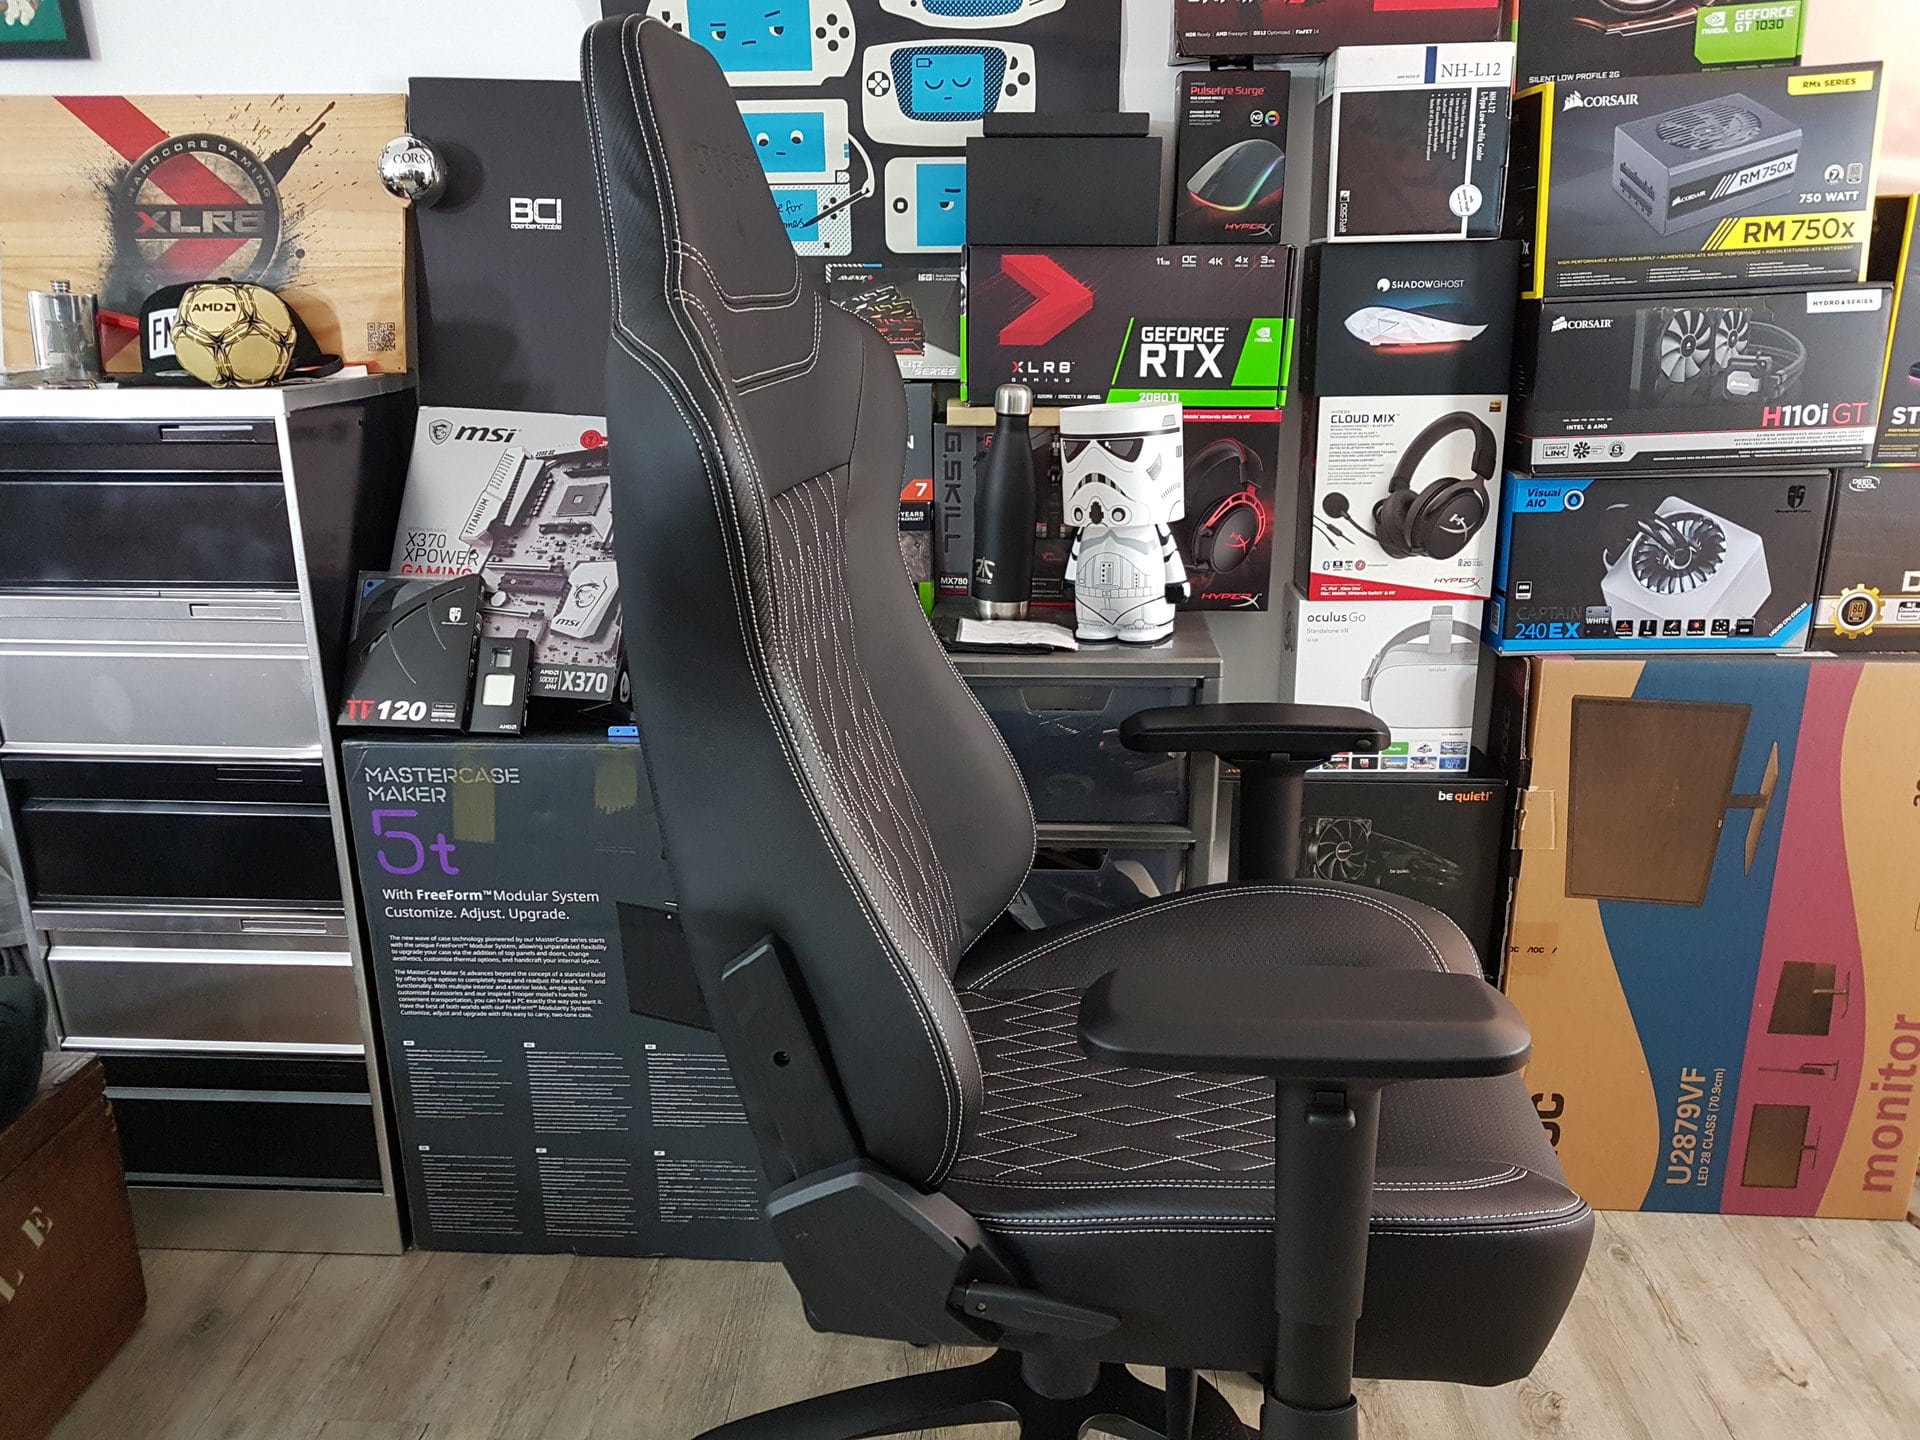 Image 13 : Test : Oraxeat XL800, enfin un fauteuil gaming pour les grands joueurs